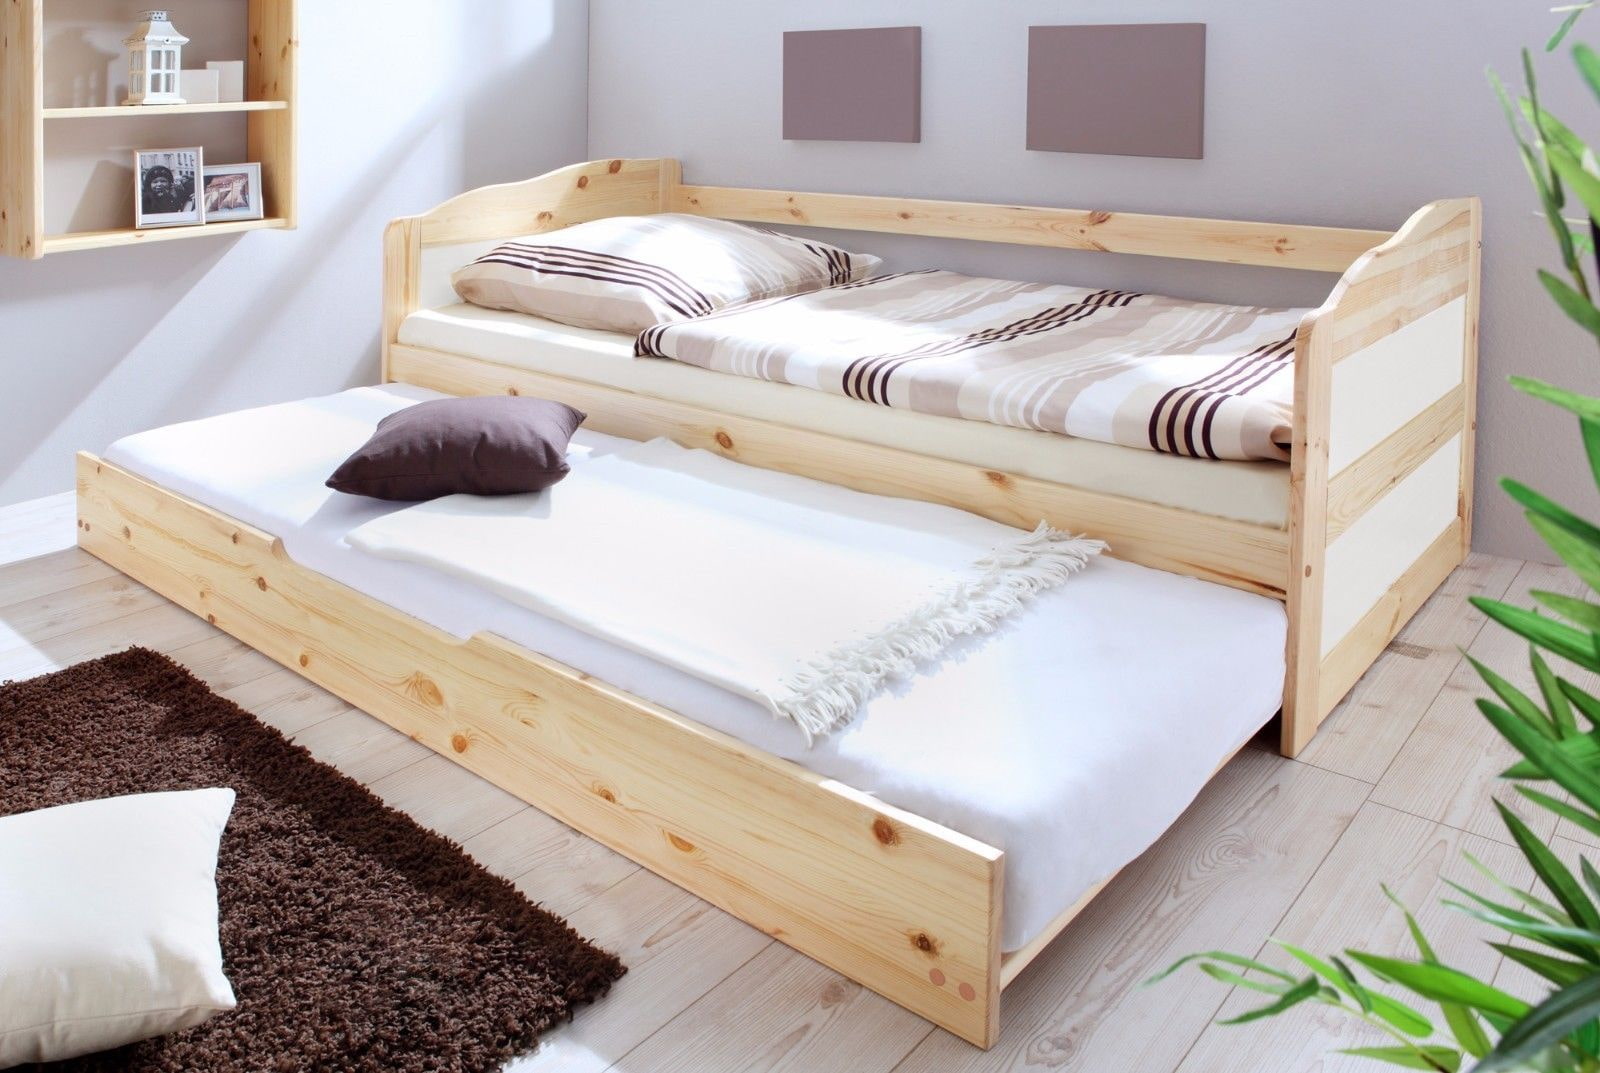 Двуспальная кровать: фото, виды, формы, дизайн, цветовая гамма, стили